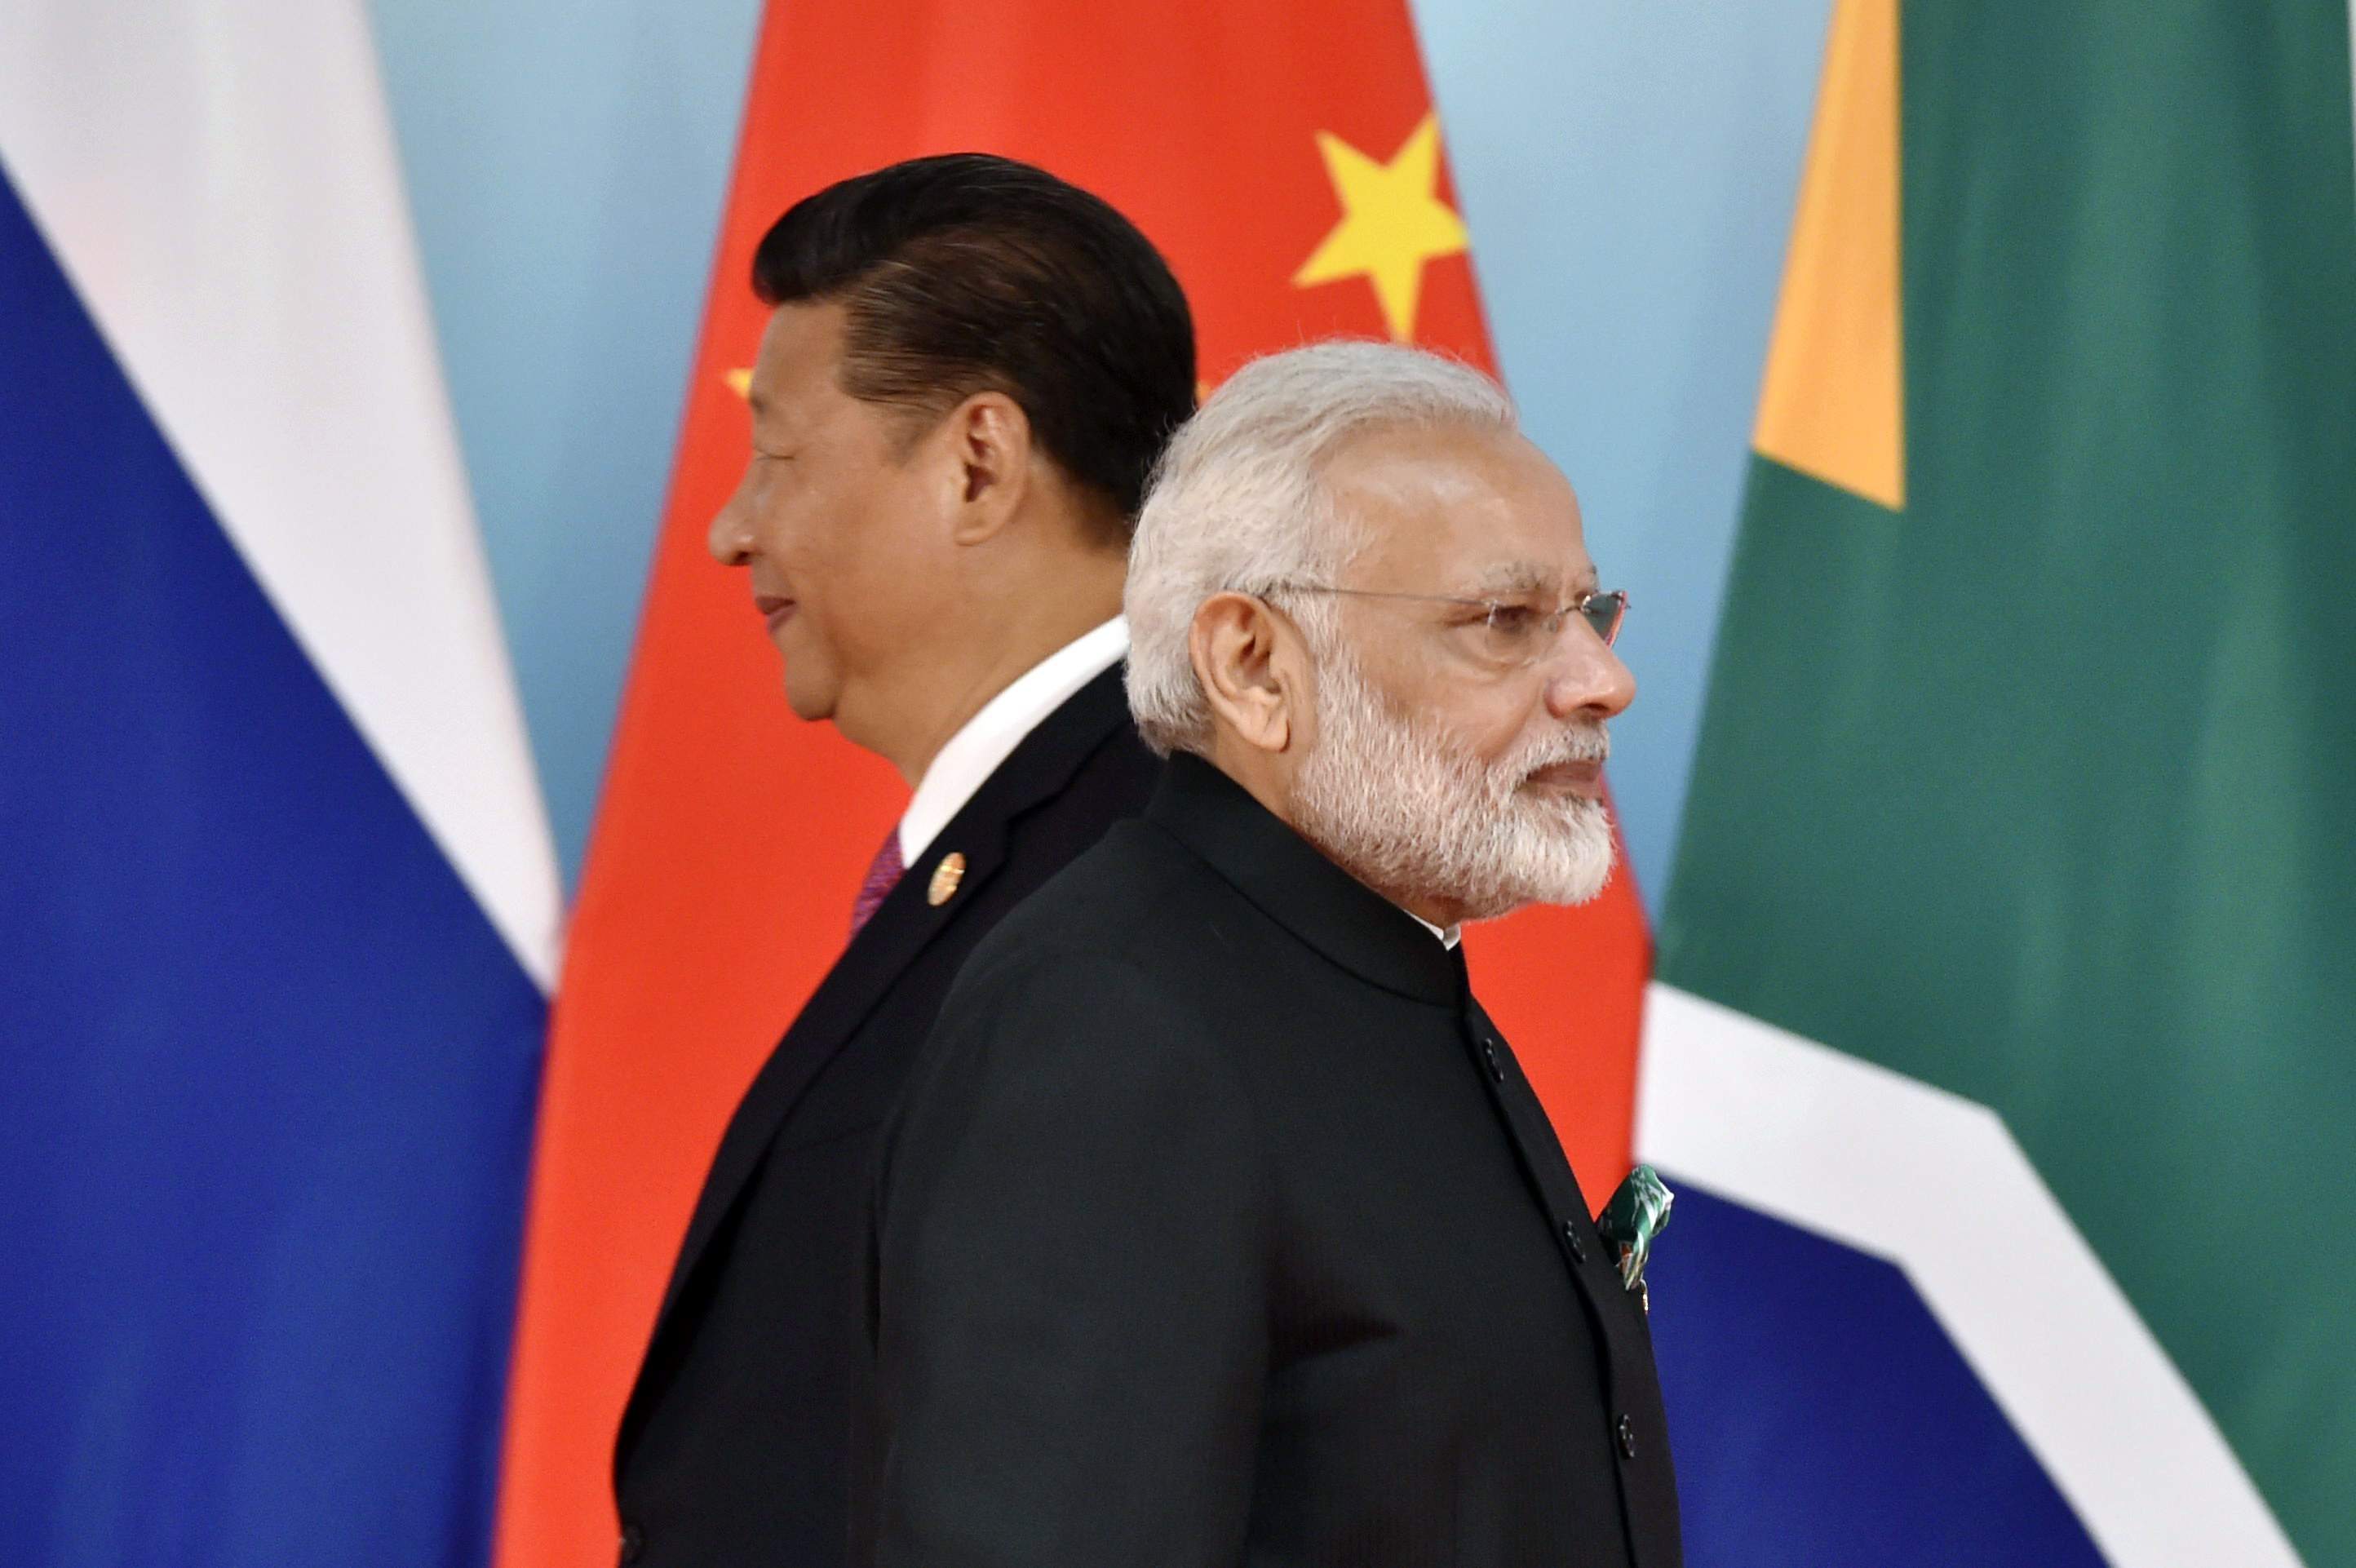 चीन के राष्ट्रपति शी जिनपिंग और भारत के प्रधानमंत्री नरेंद्र मोदी. (फोटो: रॉयटर्स)